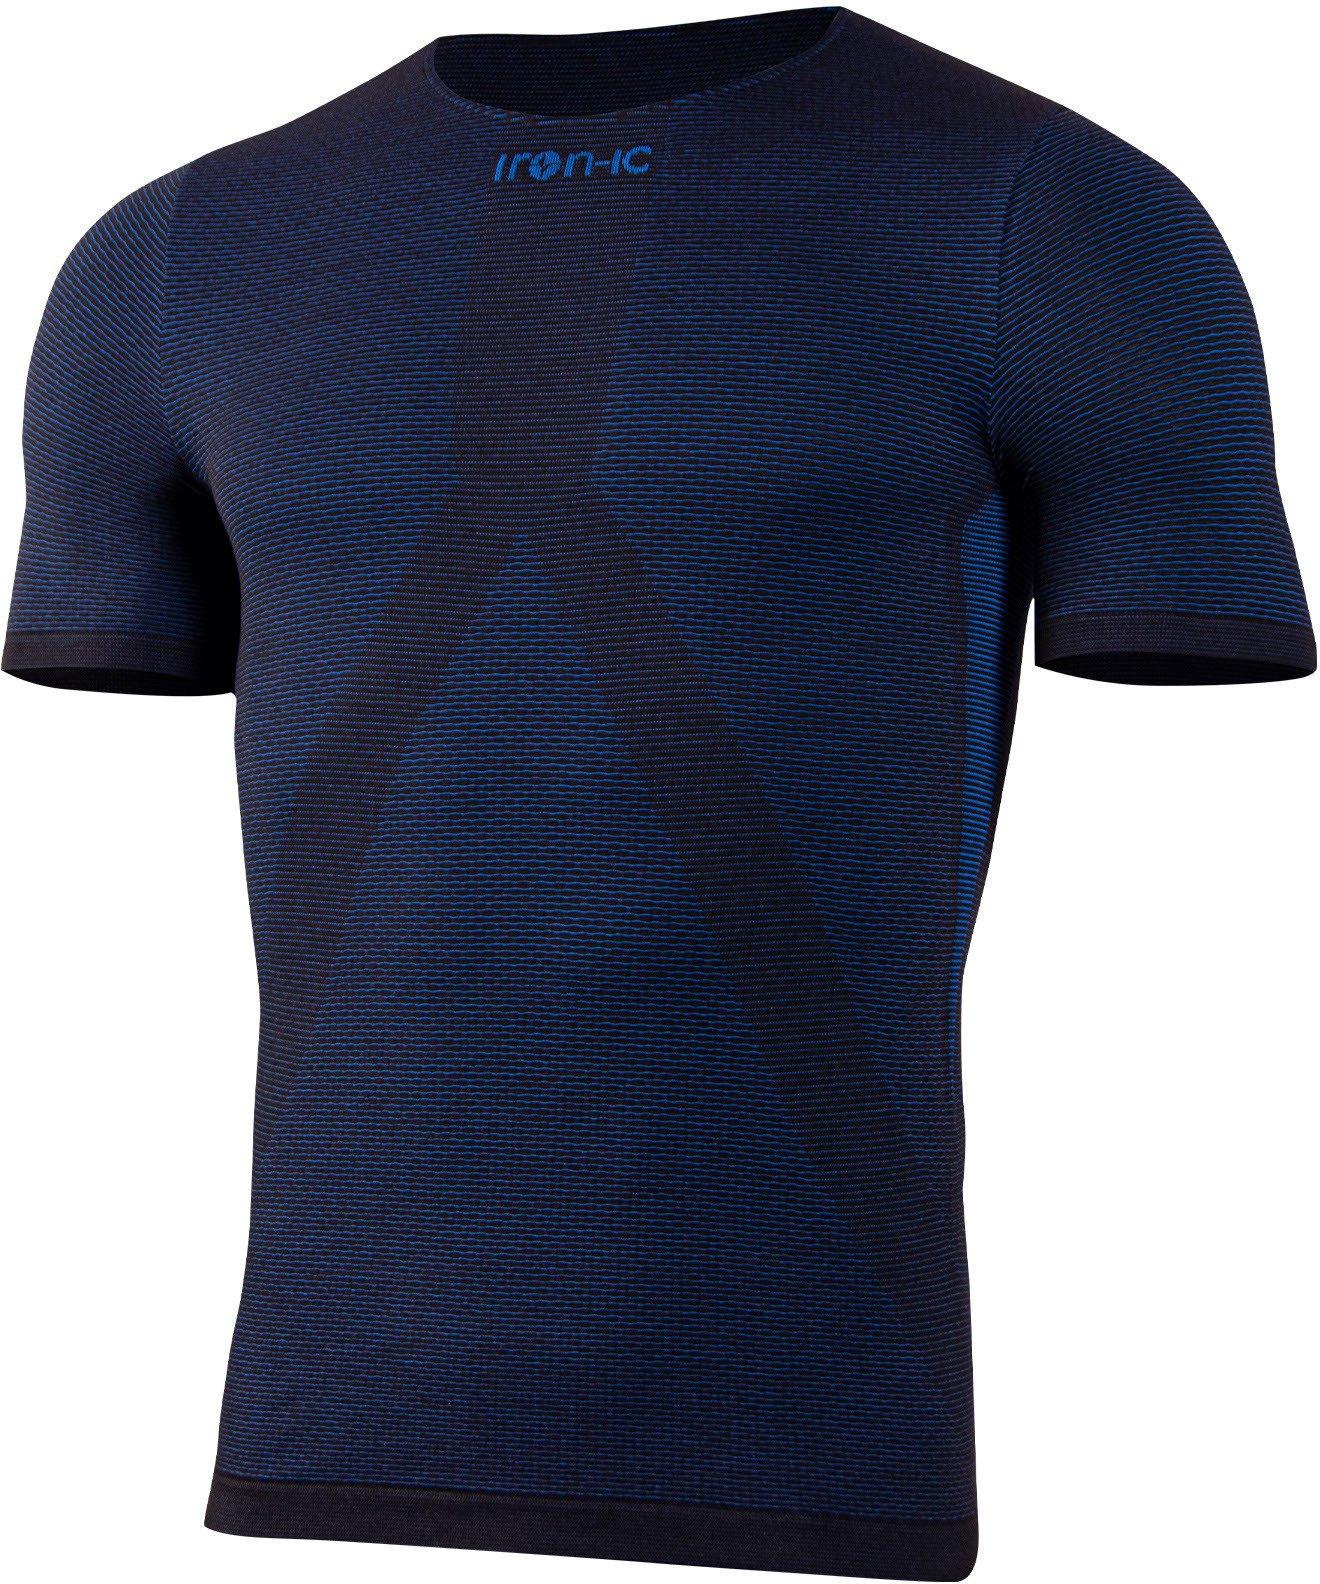 Iron-ic T-Shirt Evo Unsx Irn 4.1 L/XL